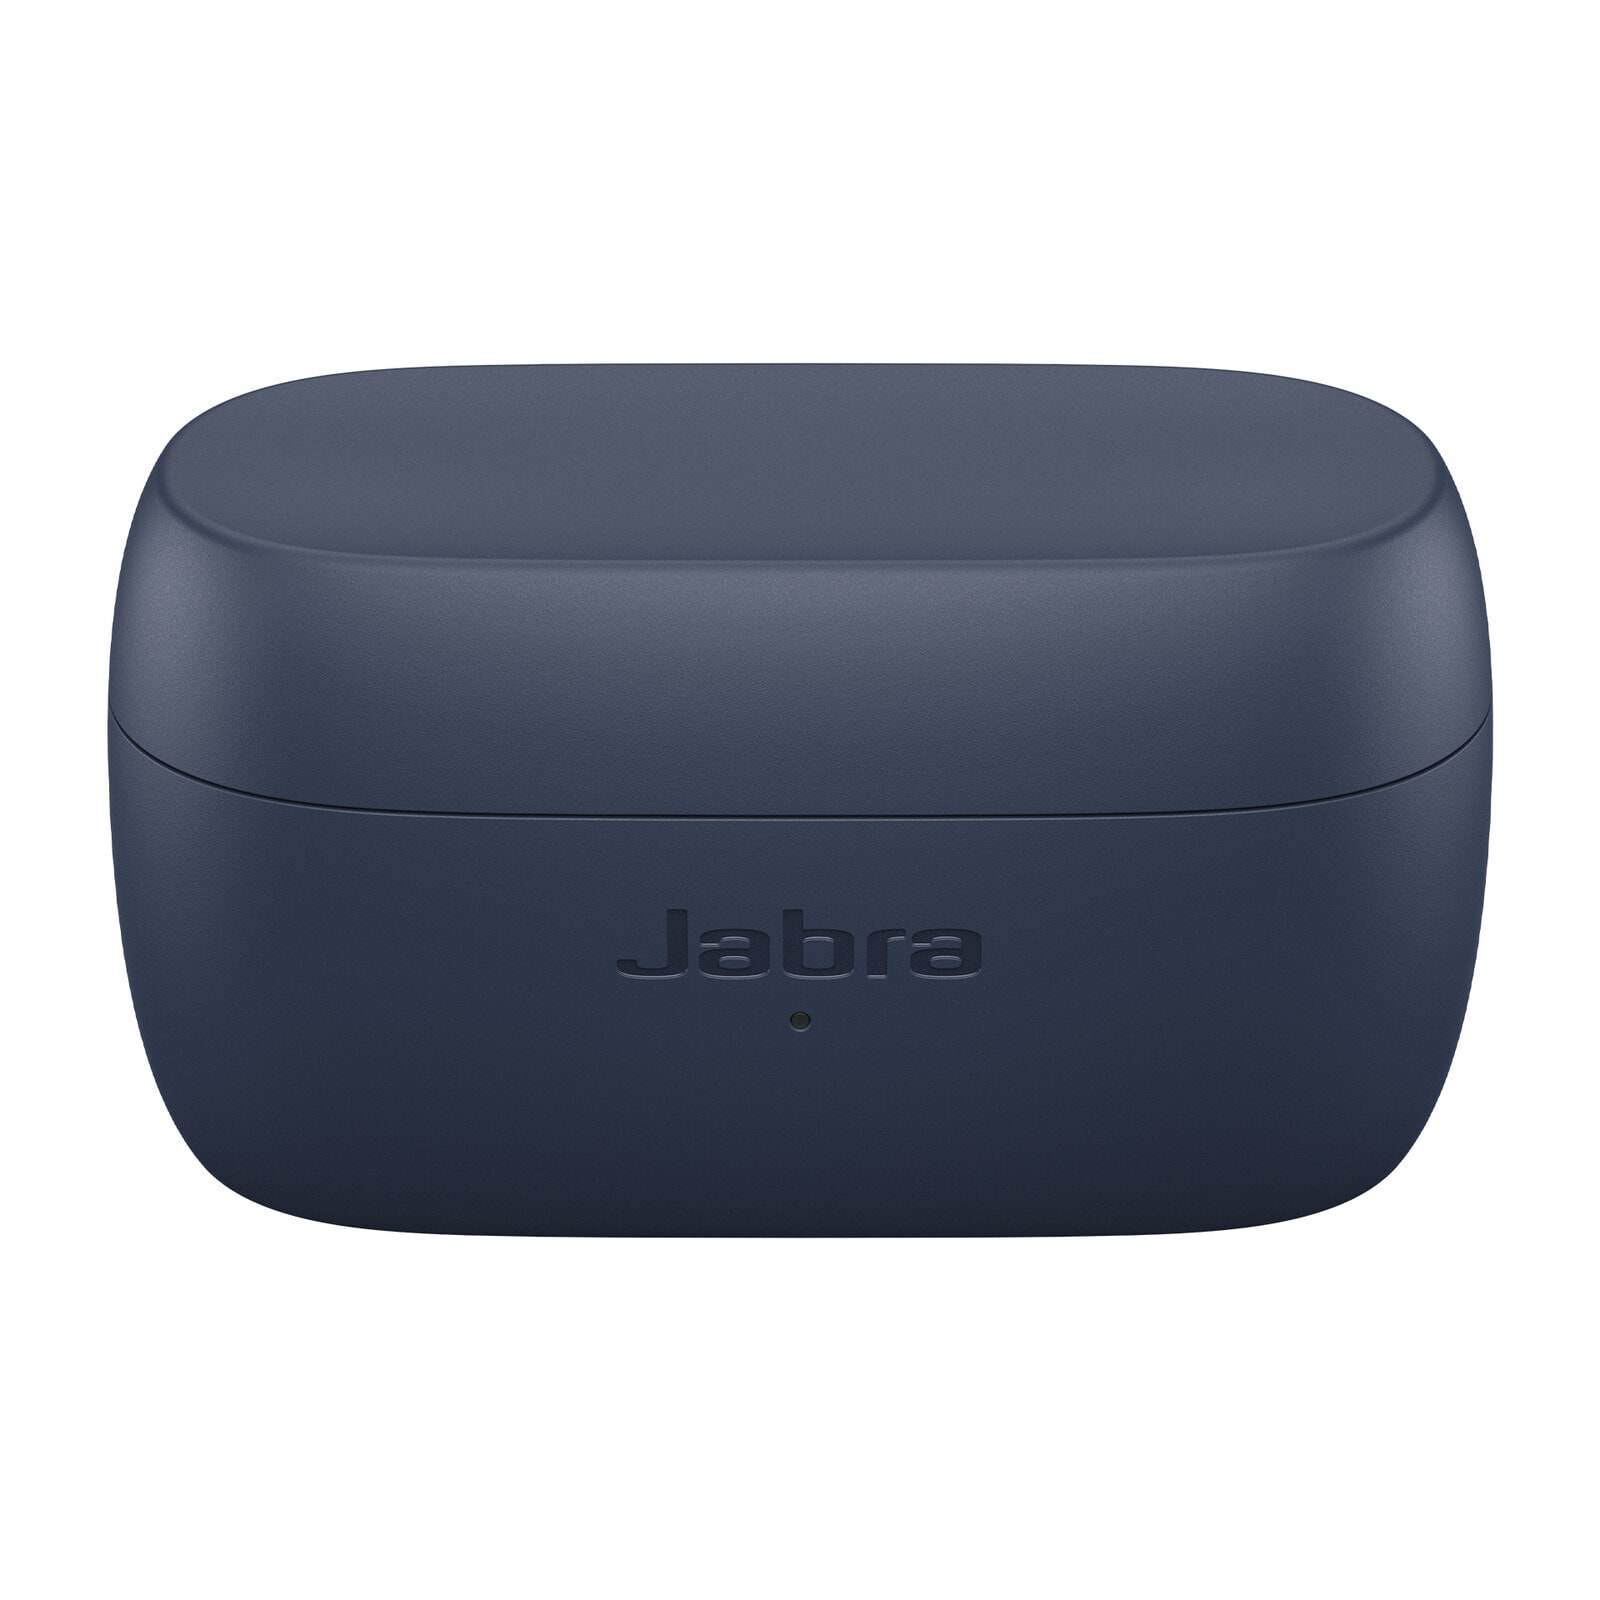 Jabra 100-91410001-60 наушники/гарнитура Беспроводной Вкладыши Calls/Music Bluetooth Темно-синий